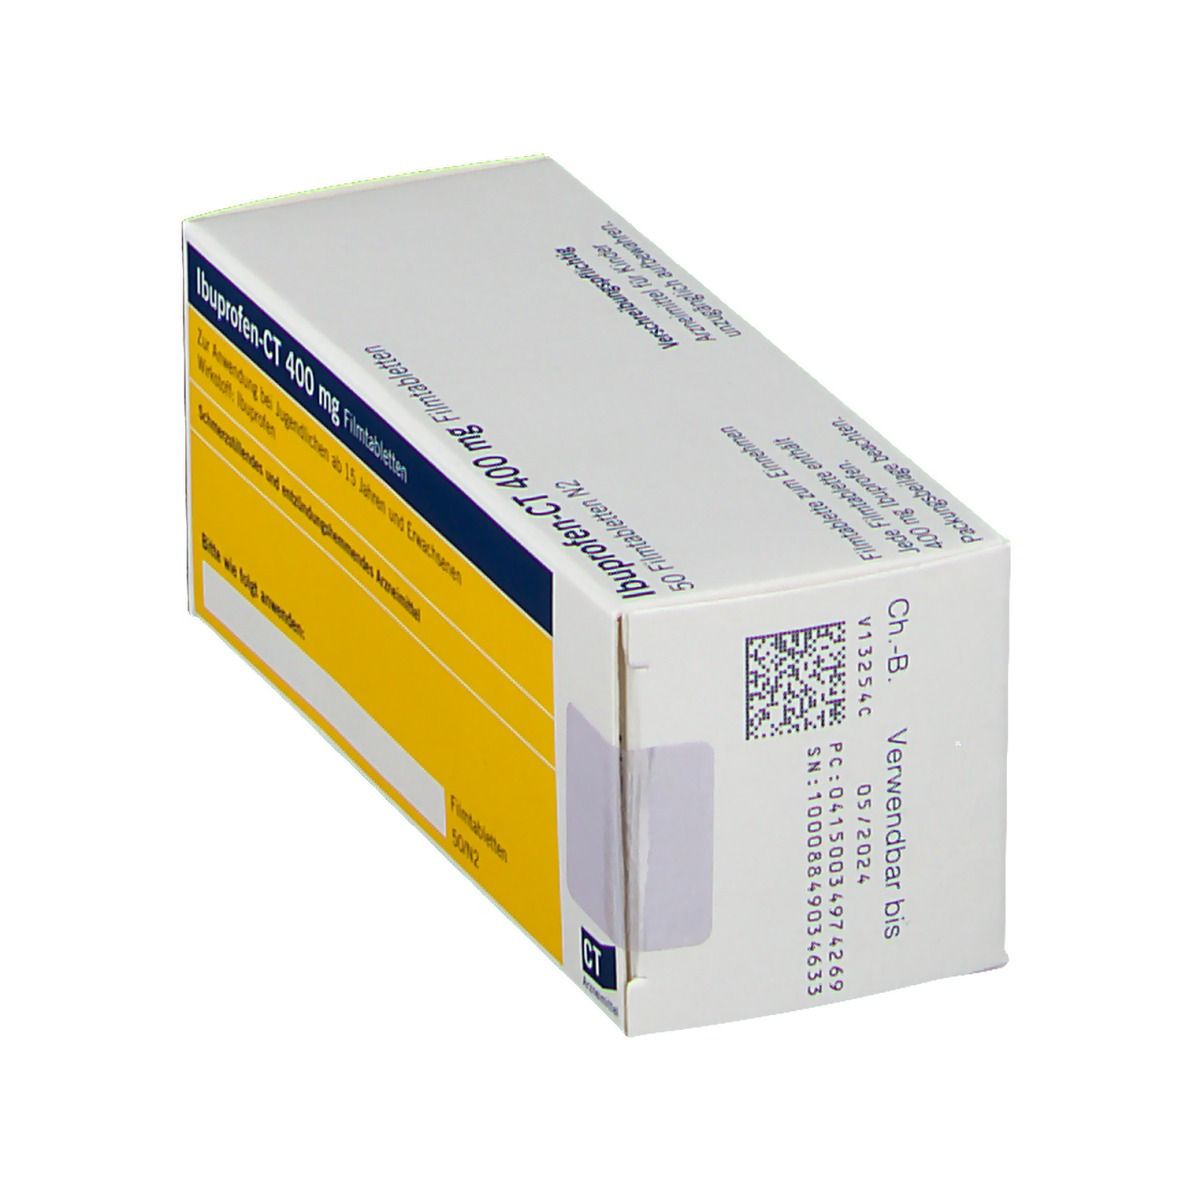 Ibuprofen - Ct 400Mg 